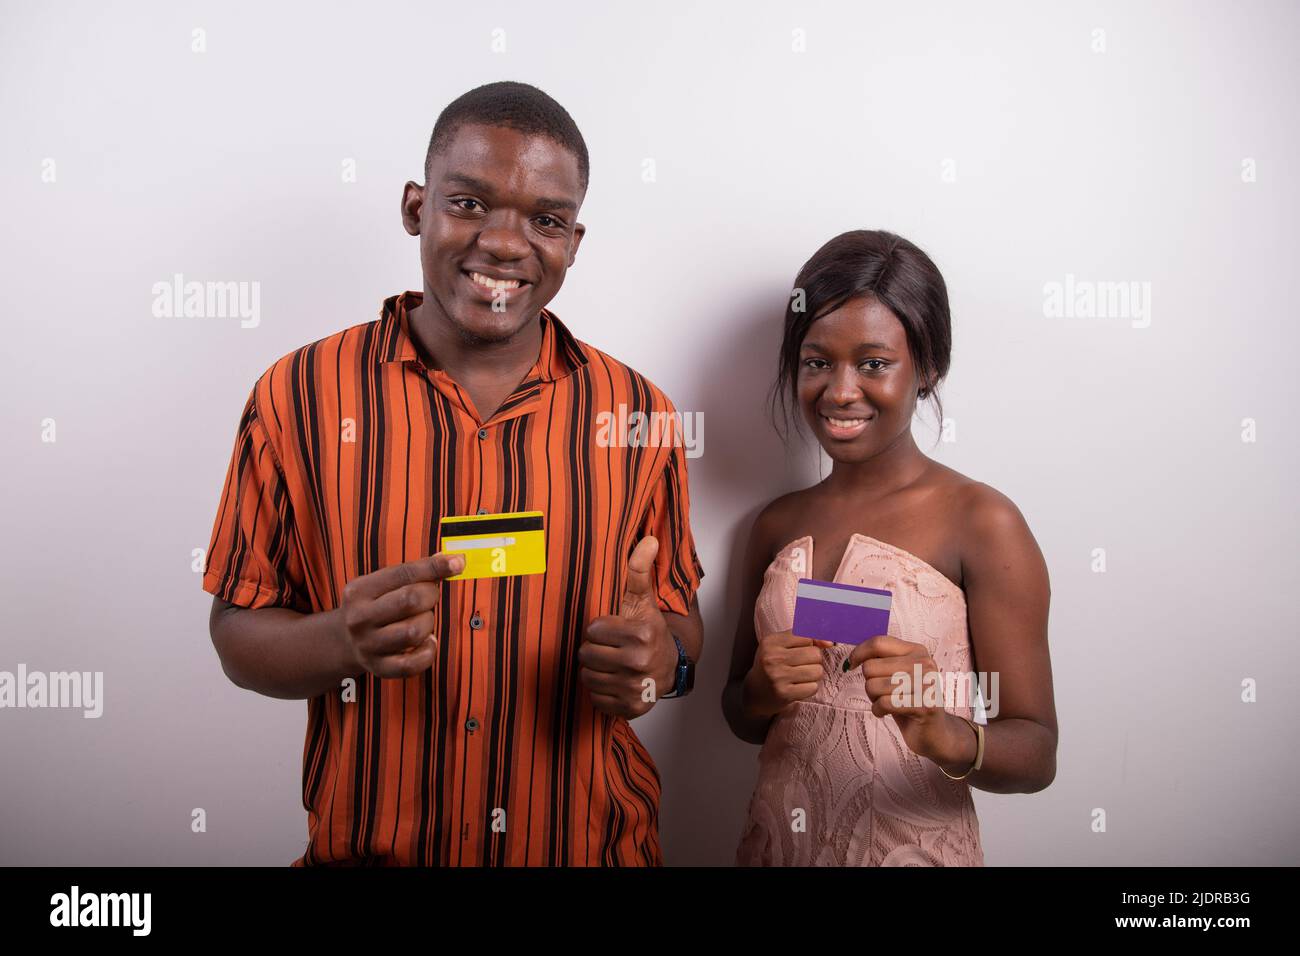 Un couple africain détient deux cartes de crédit et ils sourient, ils encouragent les paiements électroniques en Afrique Banque D'Images